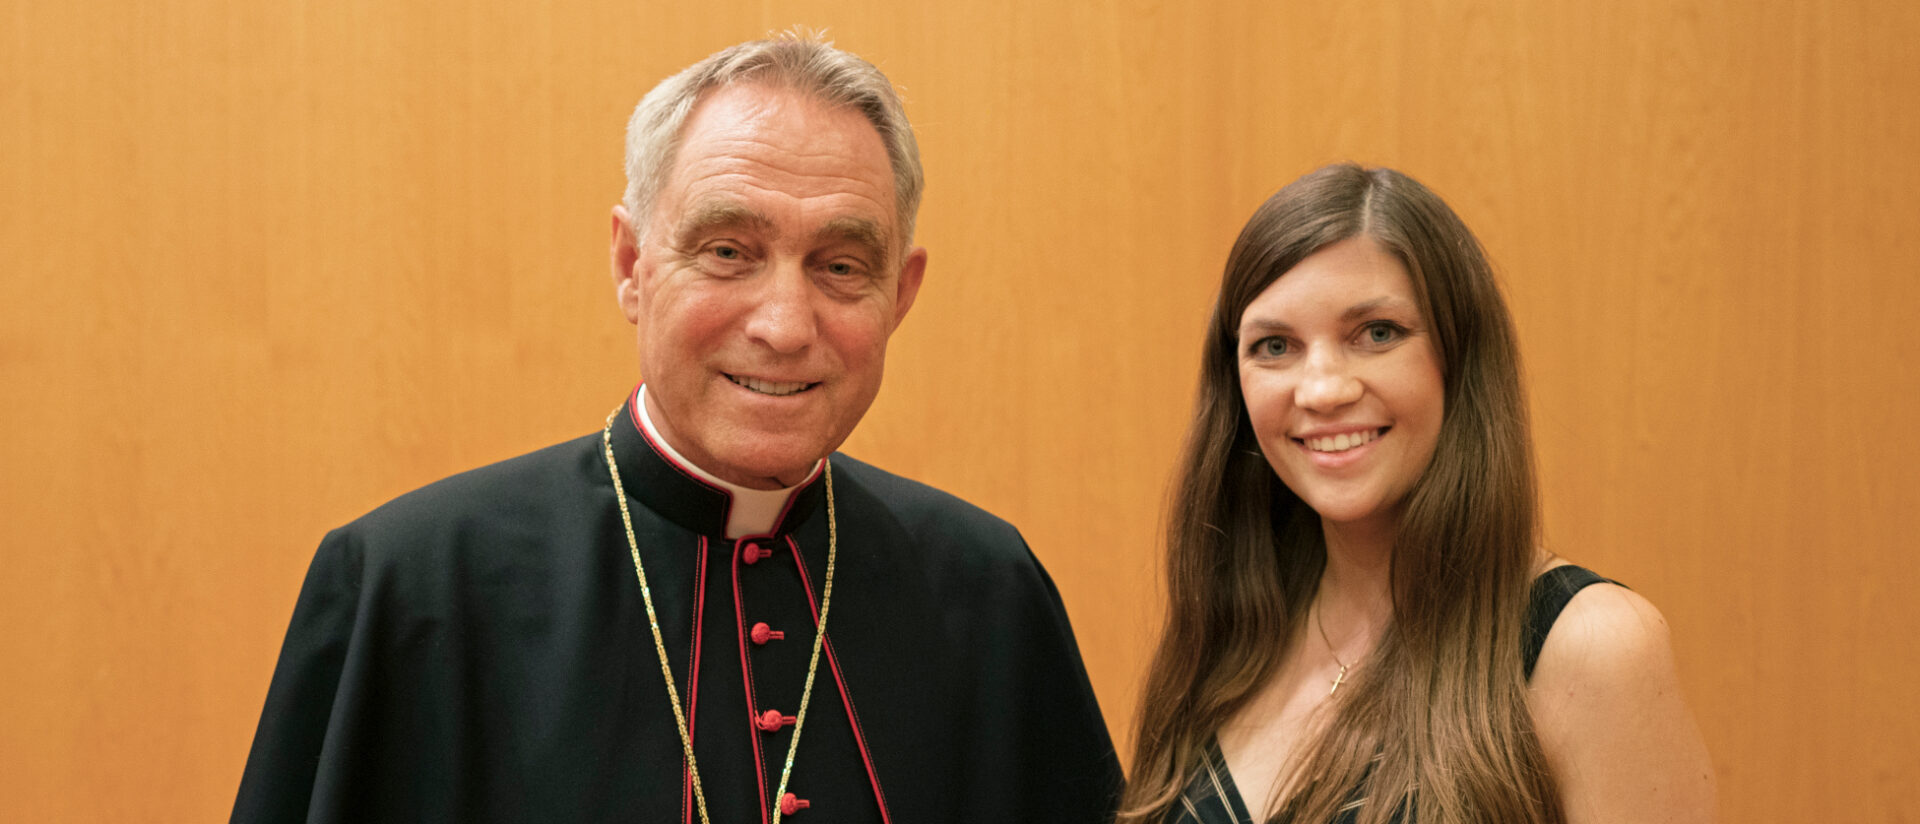 Erzbischof Georg Gänswein und Jacqueline Straub in Rom.